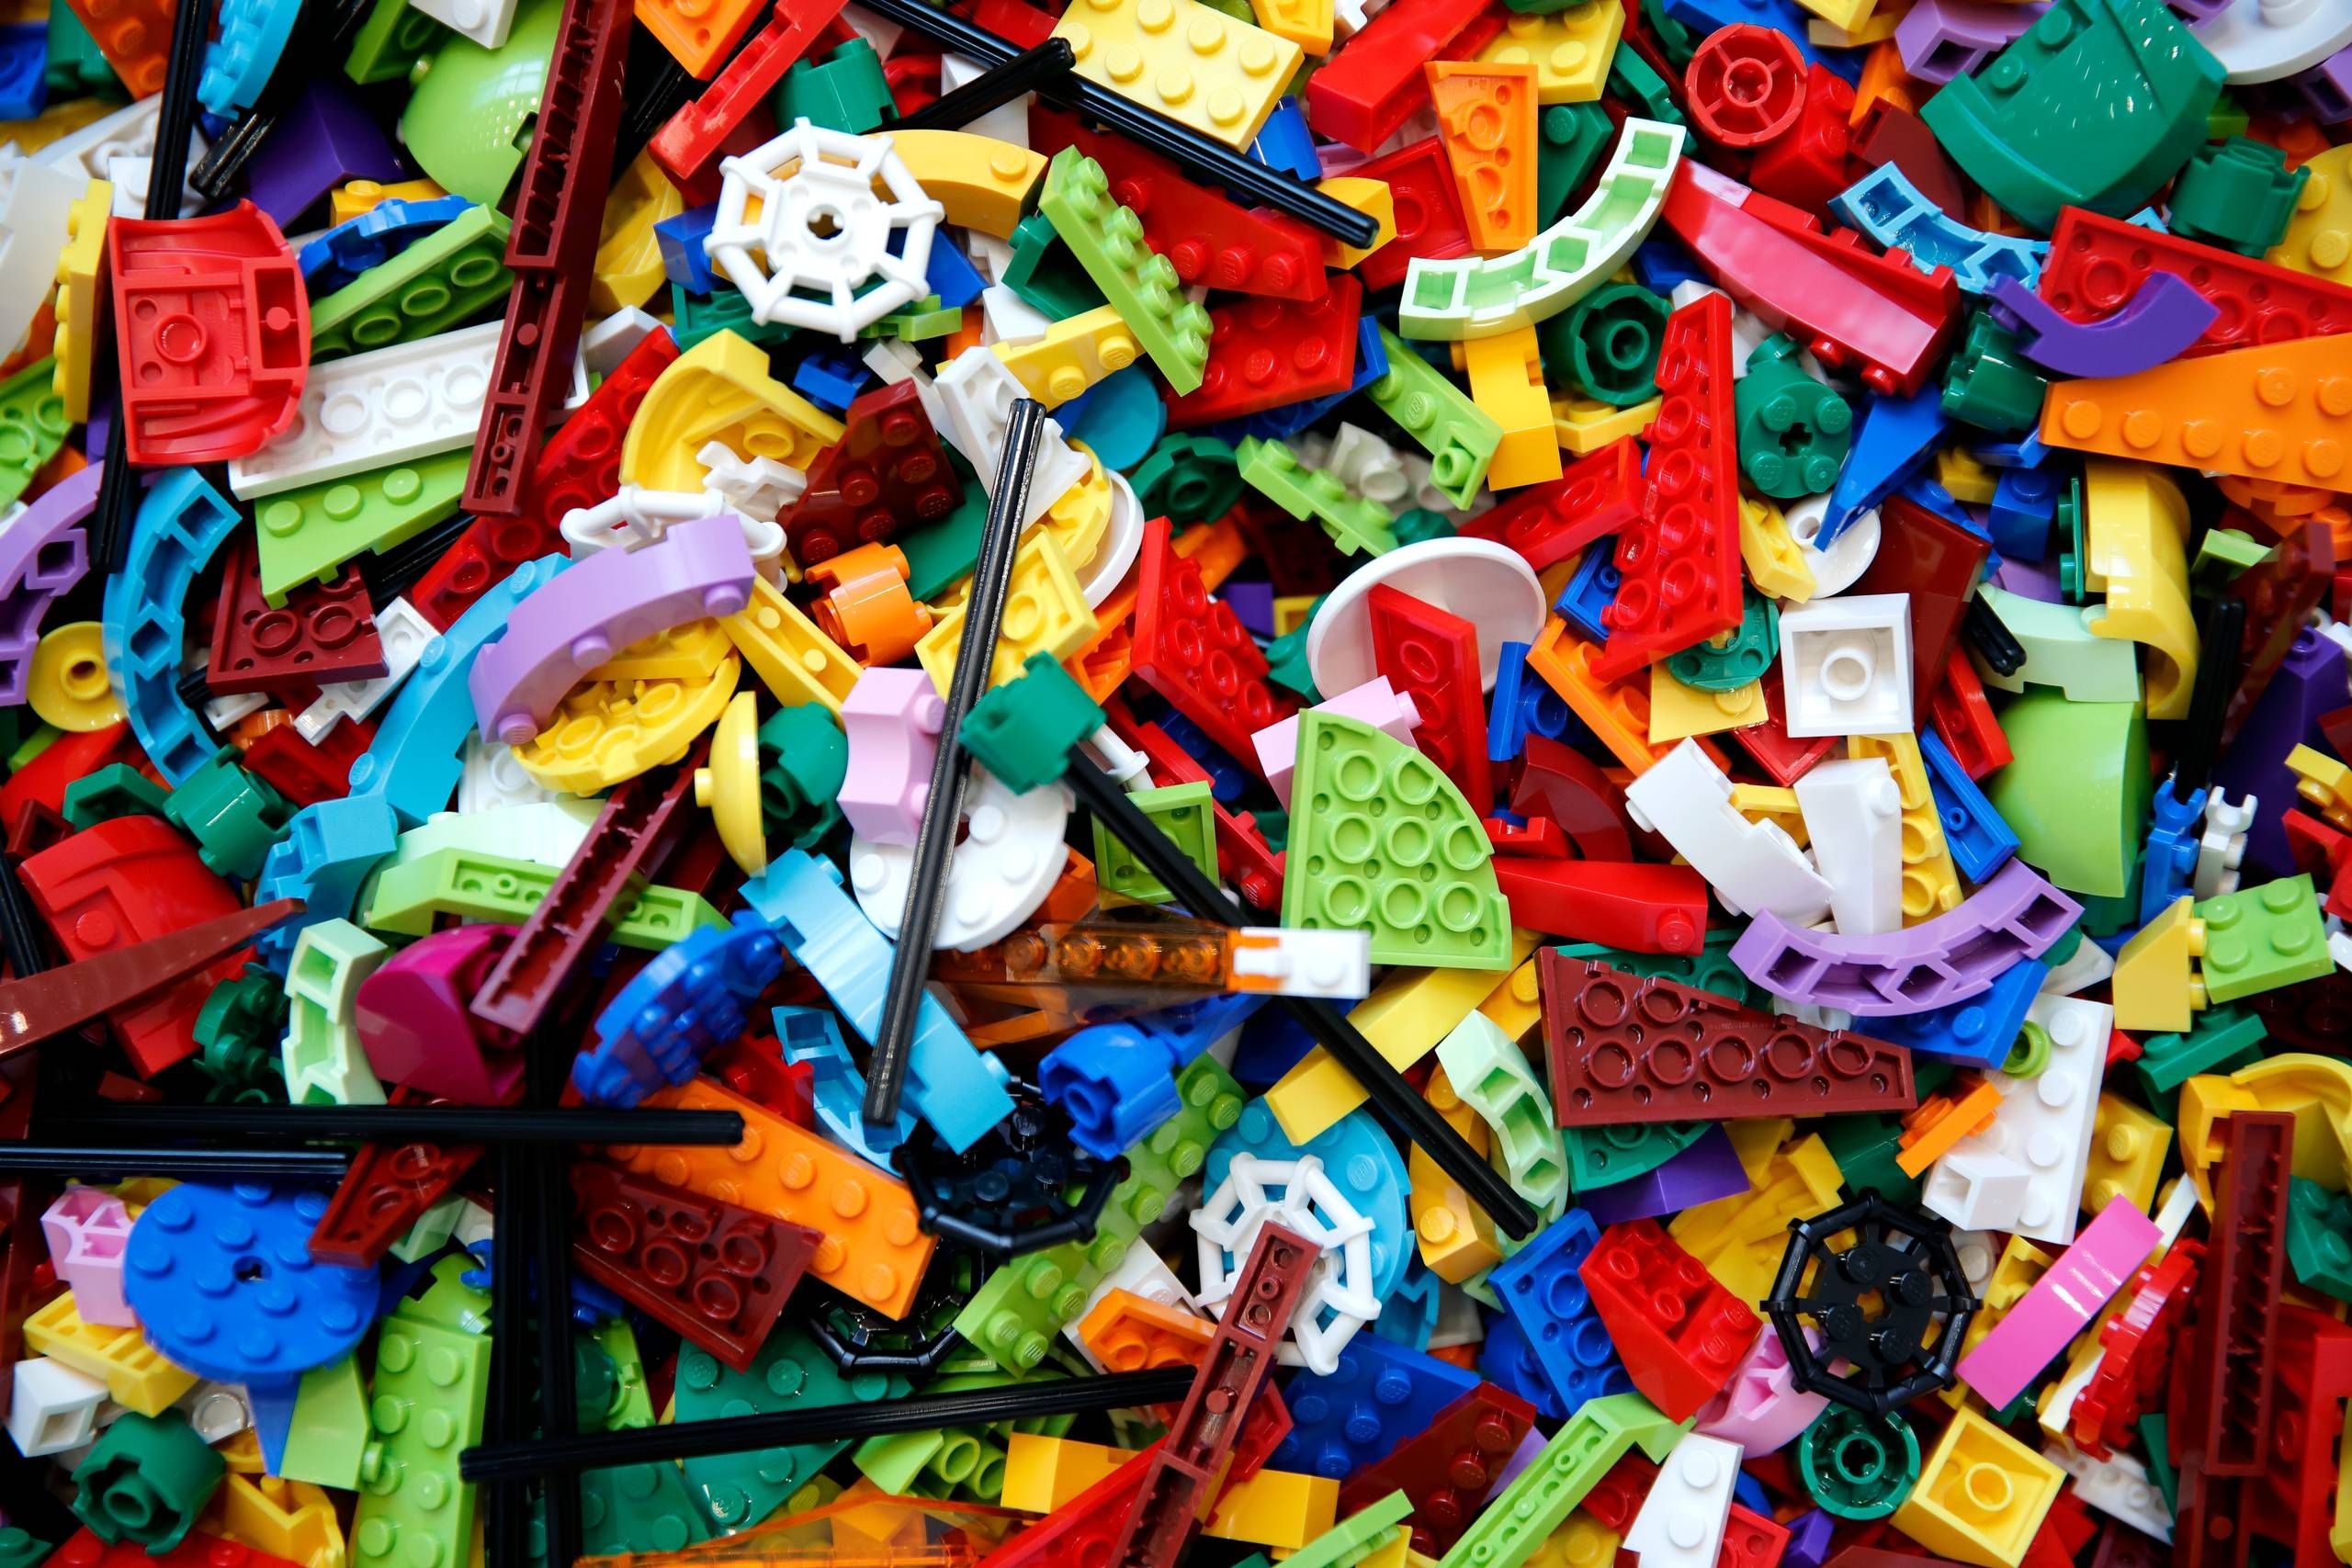 Vanding Manifold træt Salget af dansk legetøj vokser: Lego bruger 7 mia. kr. på en ny fabrik for  at sikre klodser nok